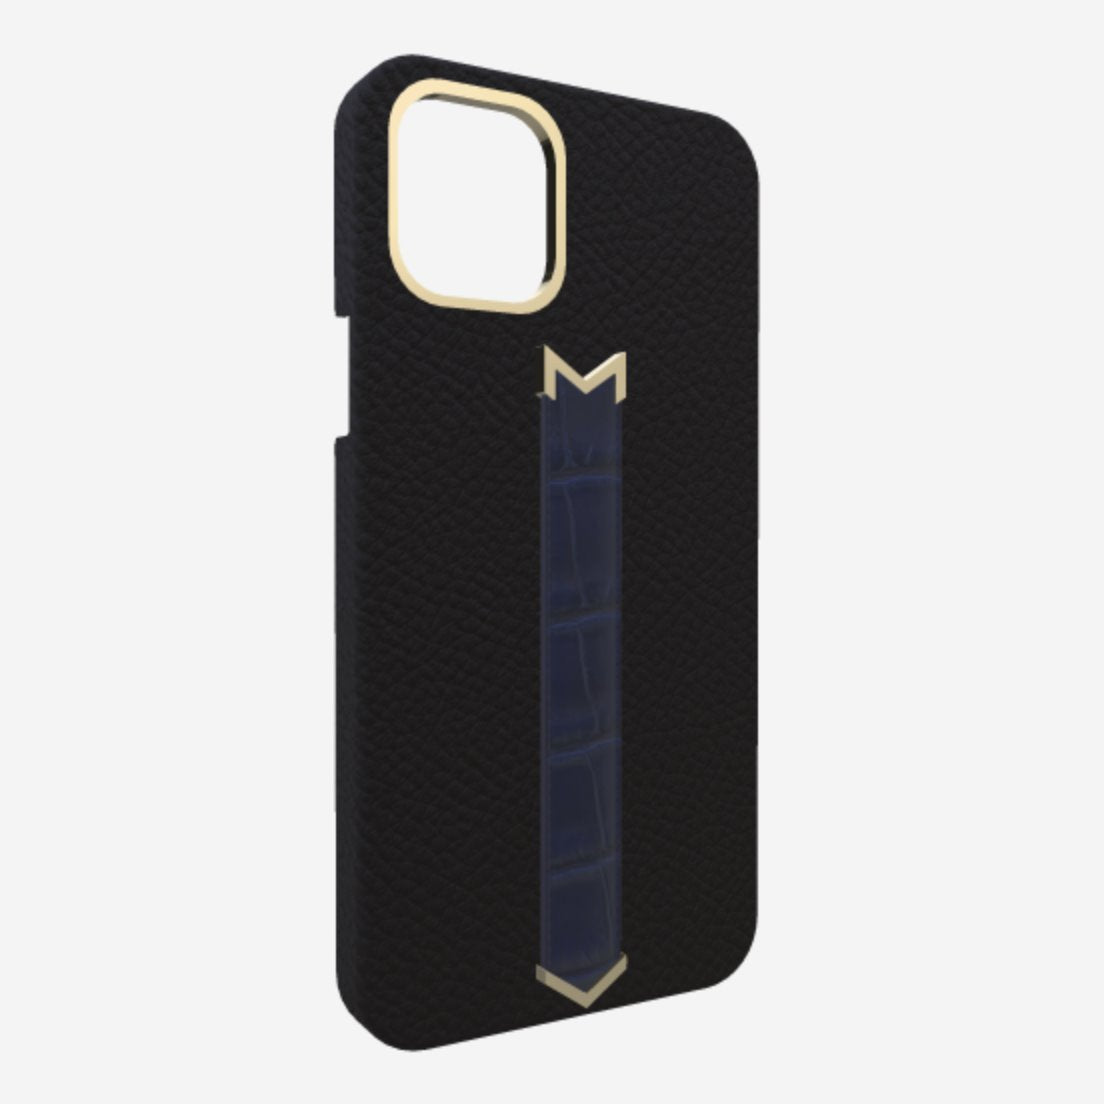 Gold Finger Strap Case for iPhone 13 in Genuine Calfskin and Alligator Bond Black Navy Blue 